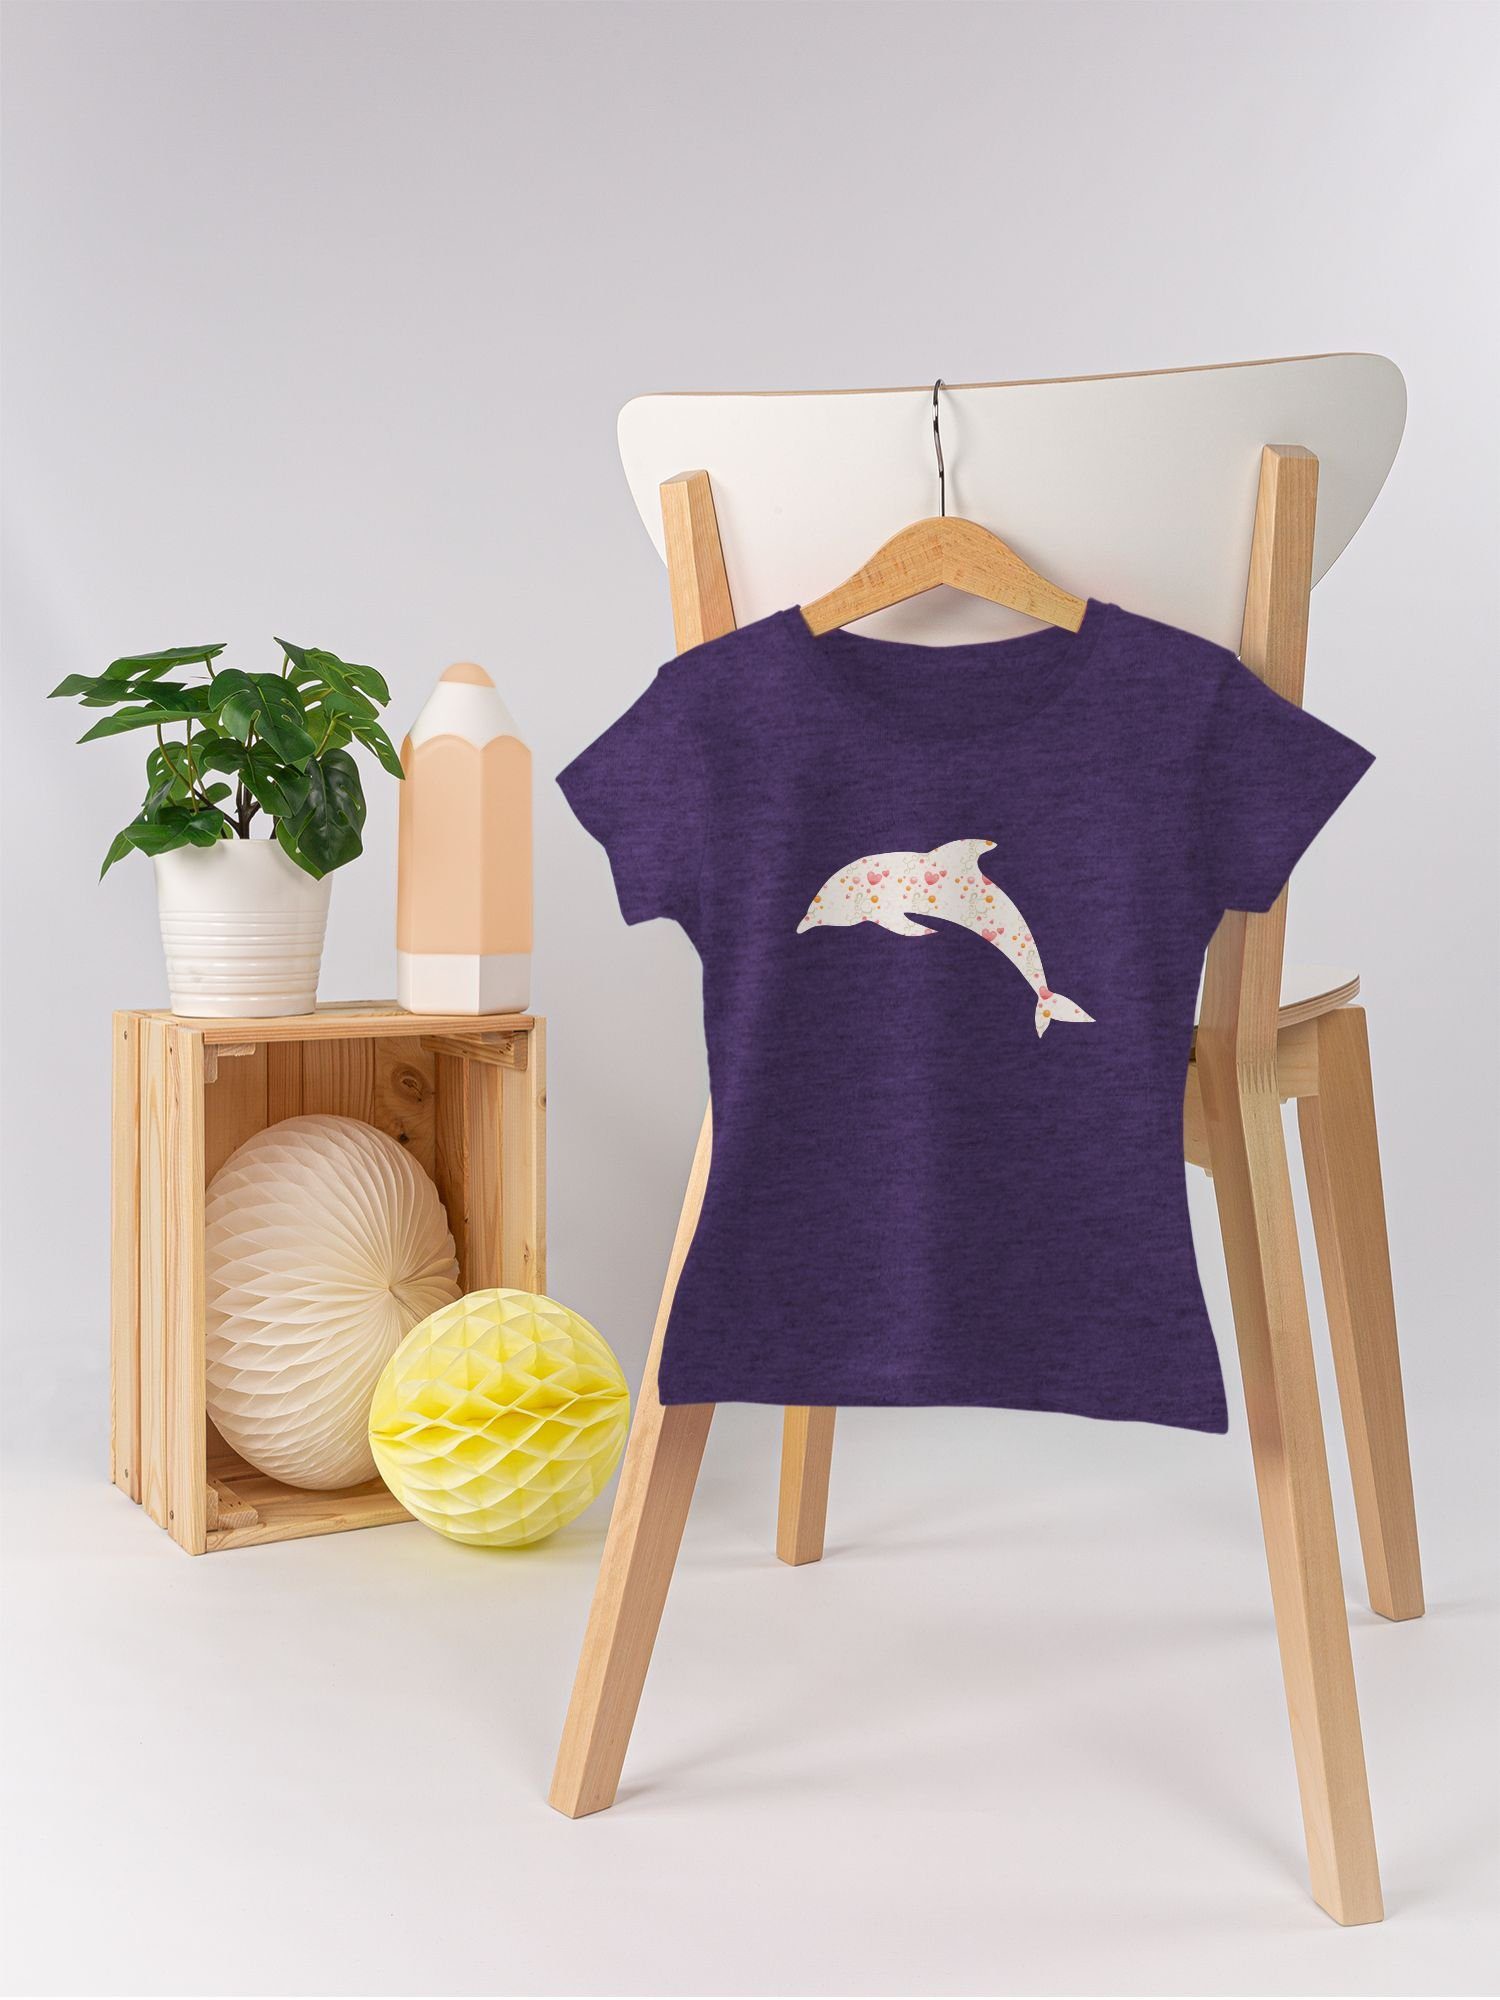 Print Shirtracer 2 Meliert Tiermotiv Delfin T-Shirt Herzen Animal Lila